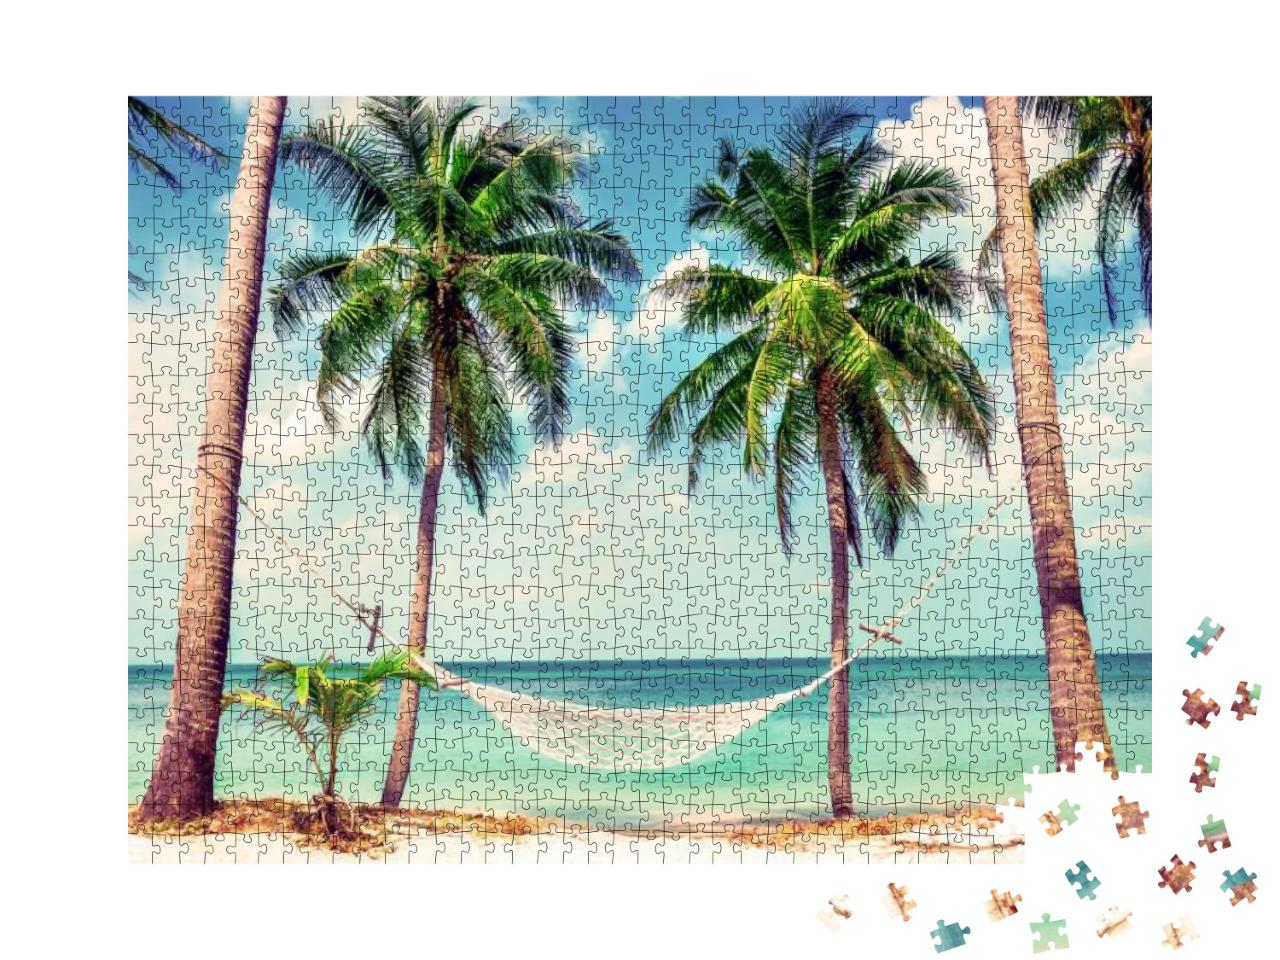 Puzzle 1000 Teile „Hängematte zwischen Palmen“